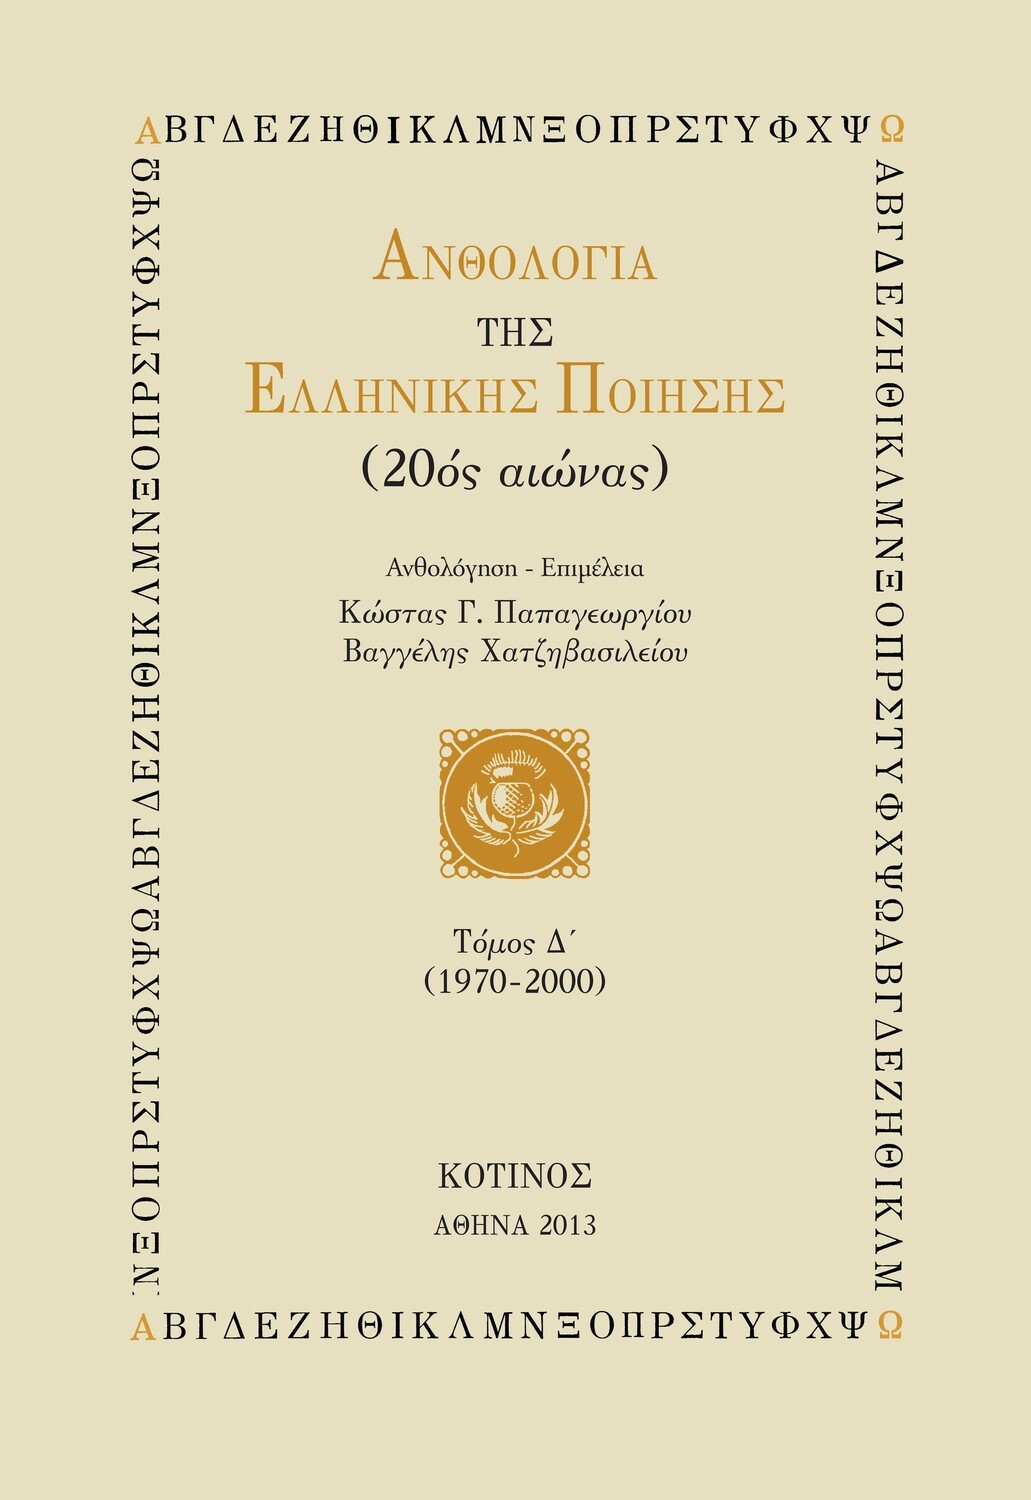 Ανθολογία της Ελληνικής Ποίησης, Τόμος Δ´ (1970-2000), Εκδόσεις Κότινος, 2013